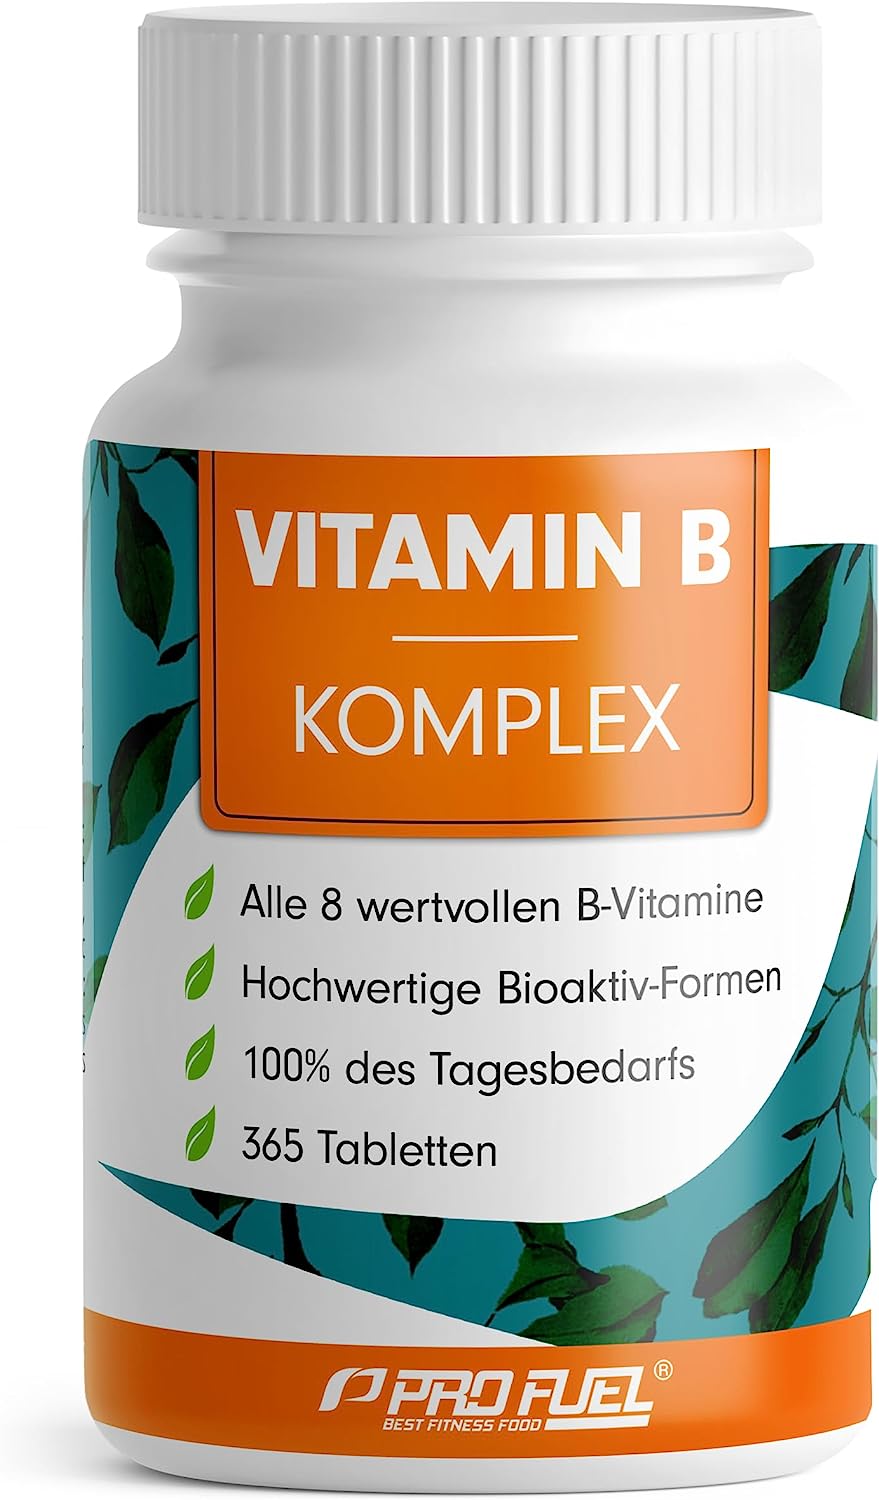 ProFuel Vitamin B Komplex | Alle 8 B-Vitamine | 365 Tabletten